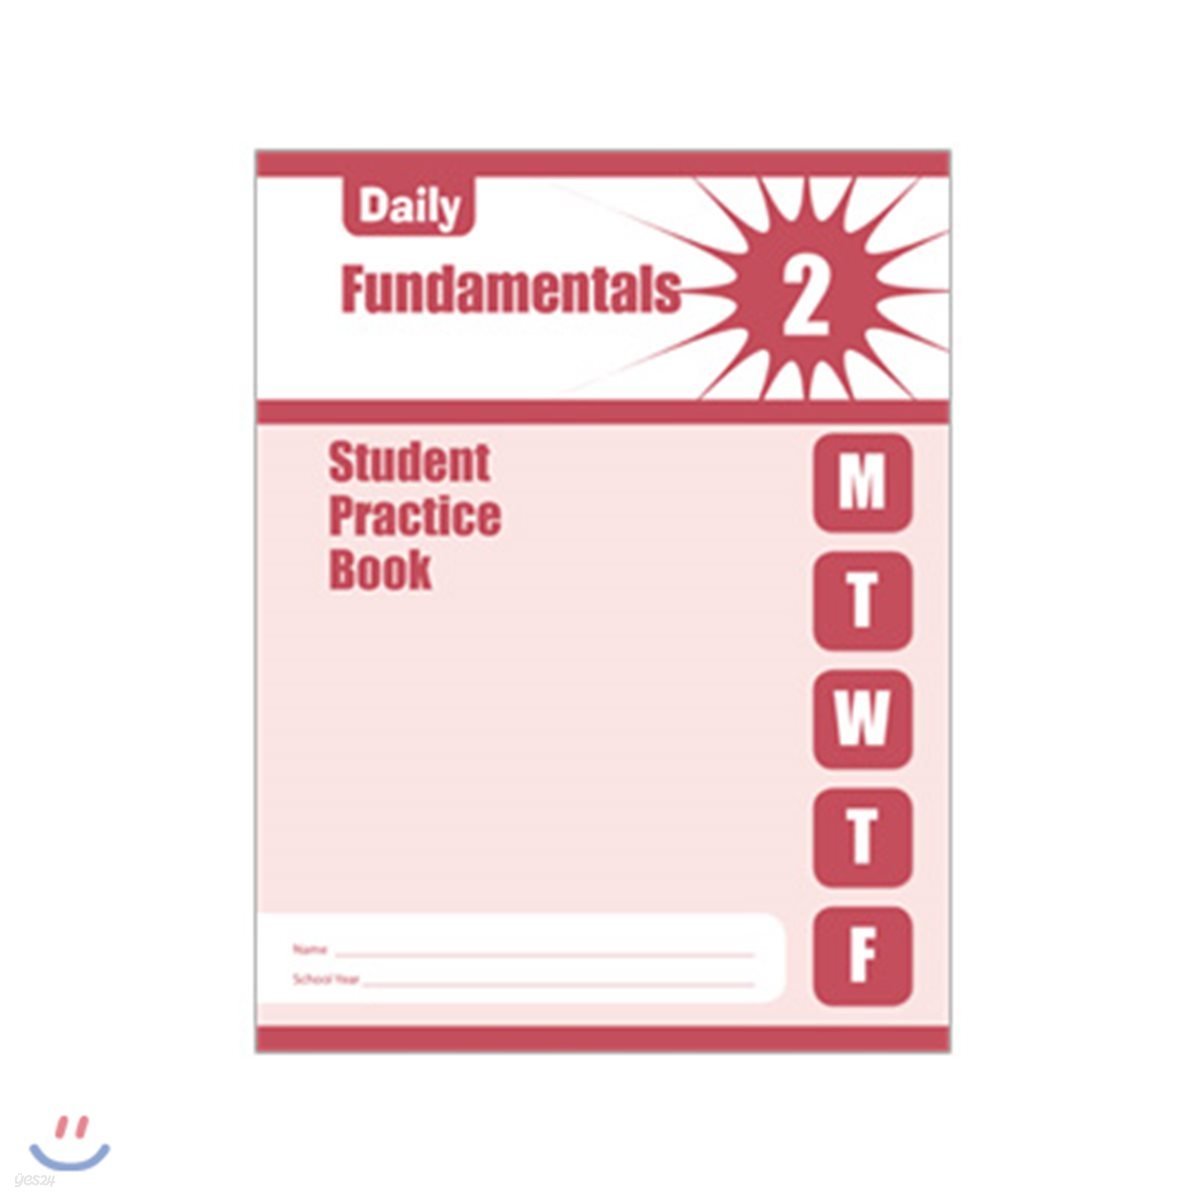 예스24　Grade　Book　Student　Practice　Daily　Fundamentals,